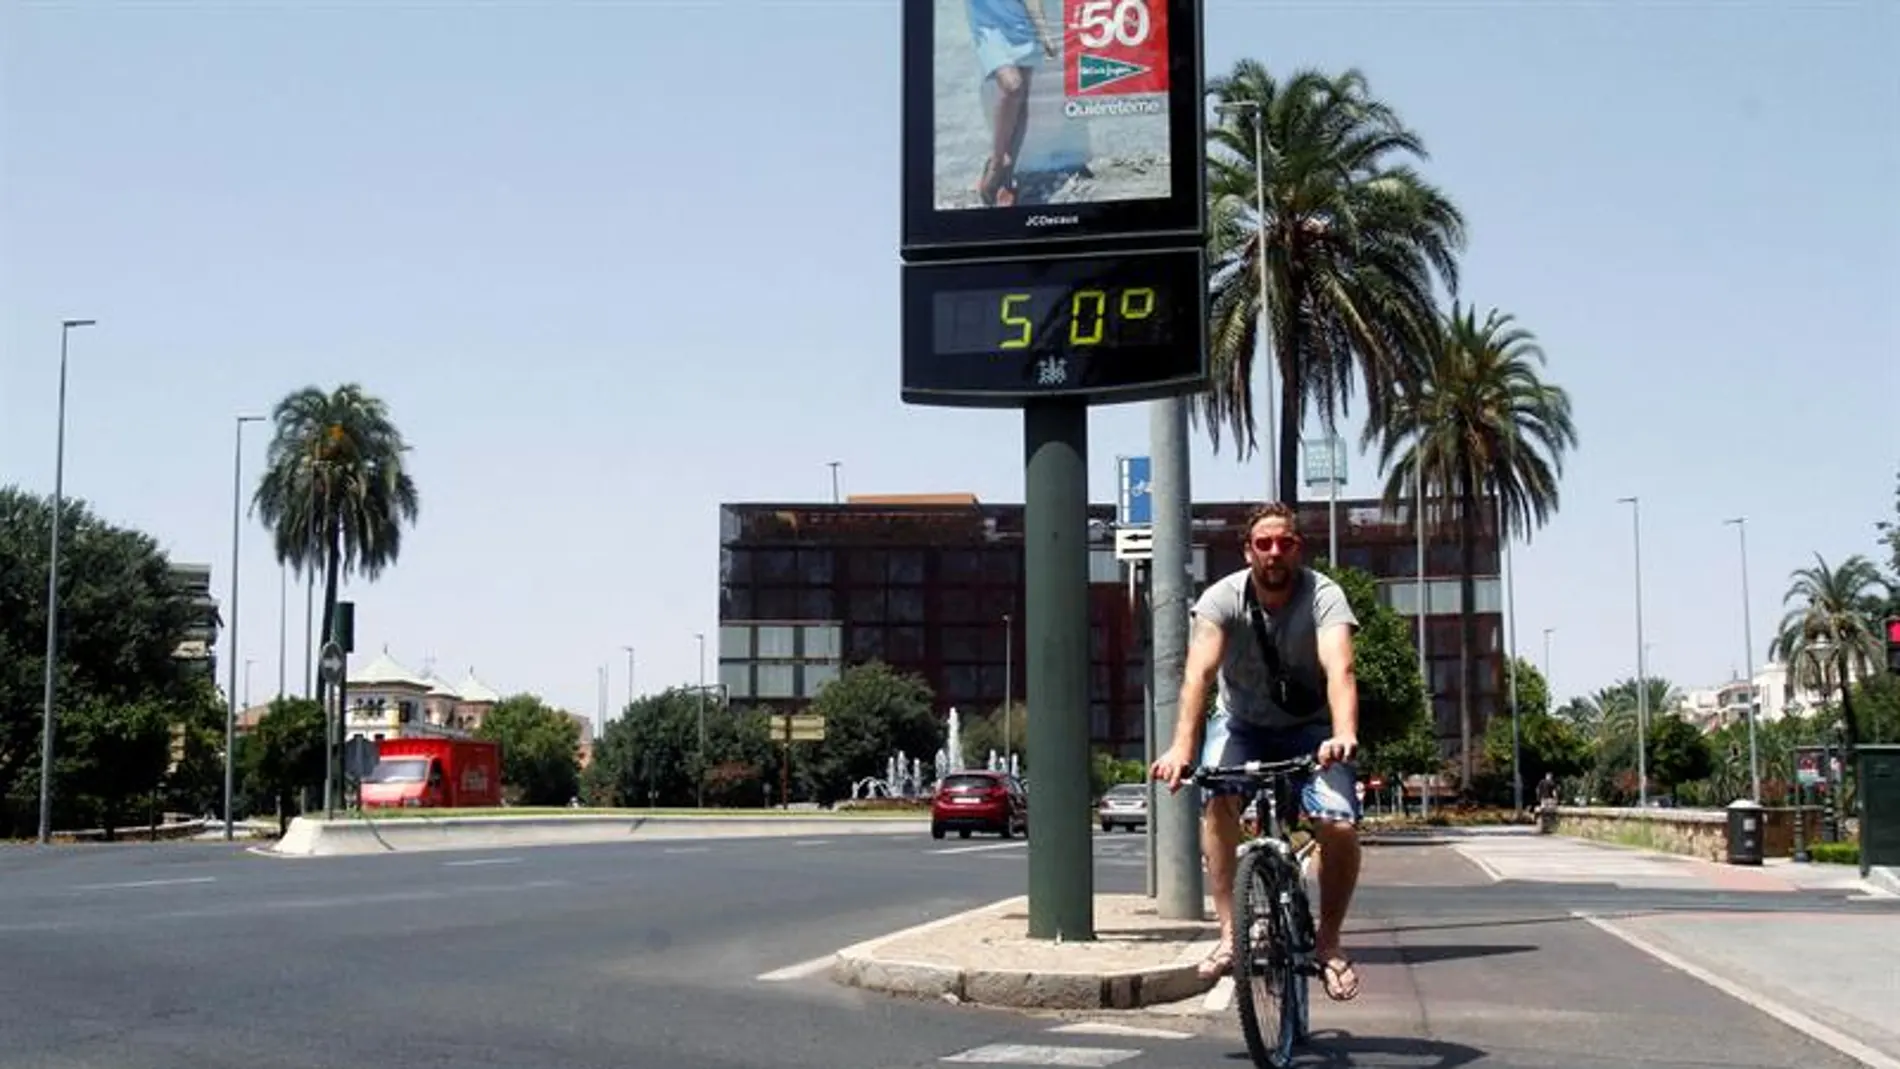 Un joven pasa con su bicicleta junto a un termómetro que marca 50 grados en una calle de Córdoba